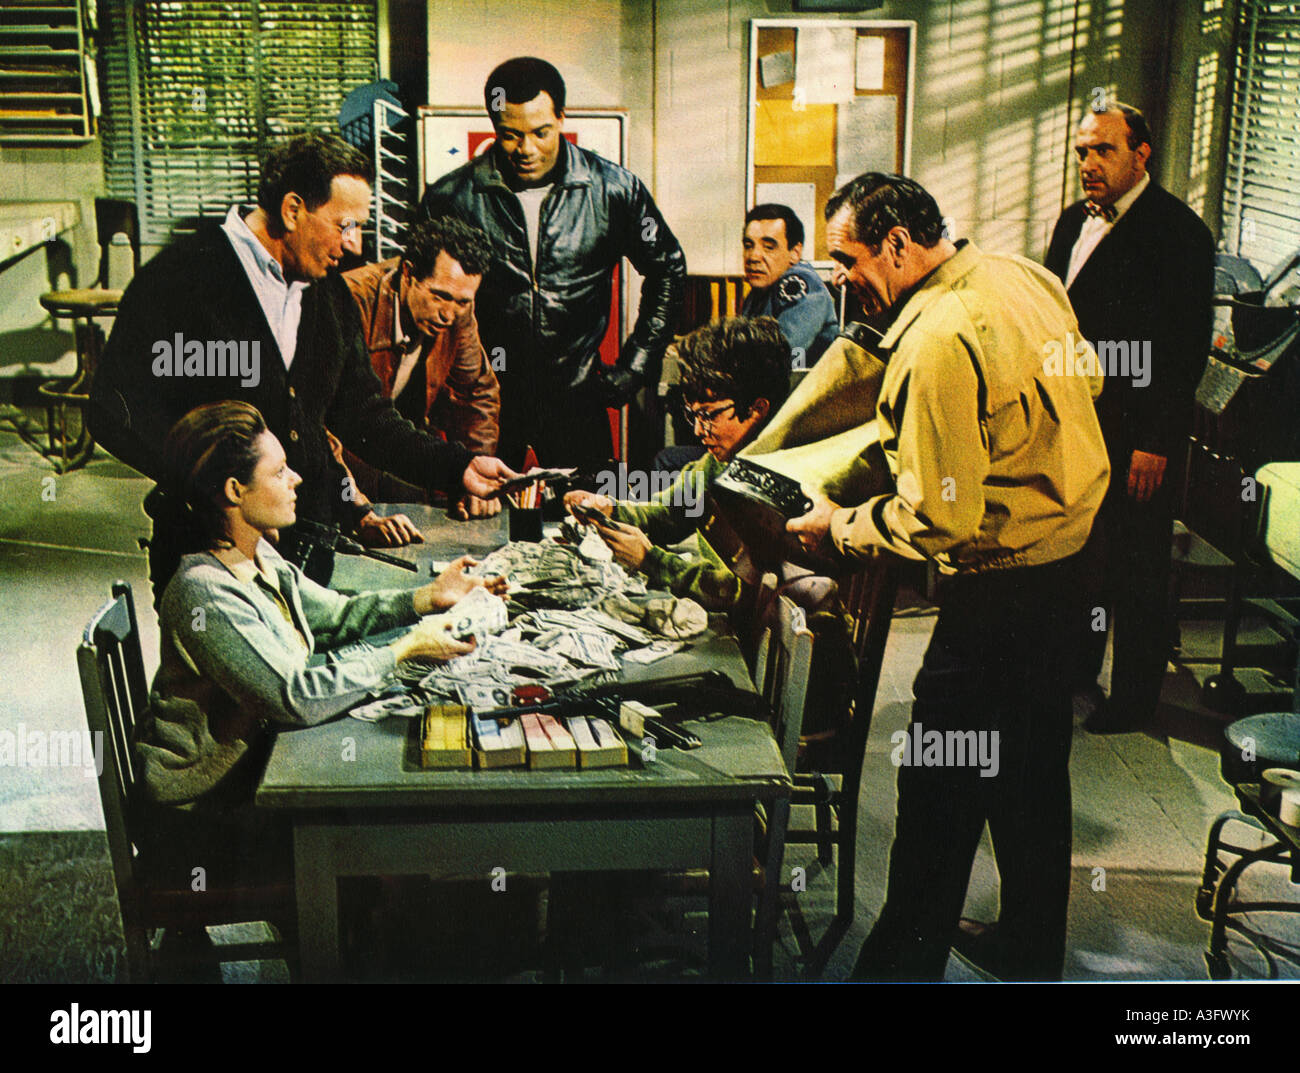 La división de 1968 MGM/espectro crimen film con Jim Brown (centro frente a la cámara) Foto de stock